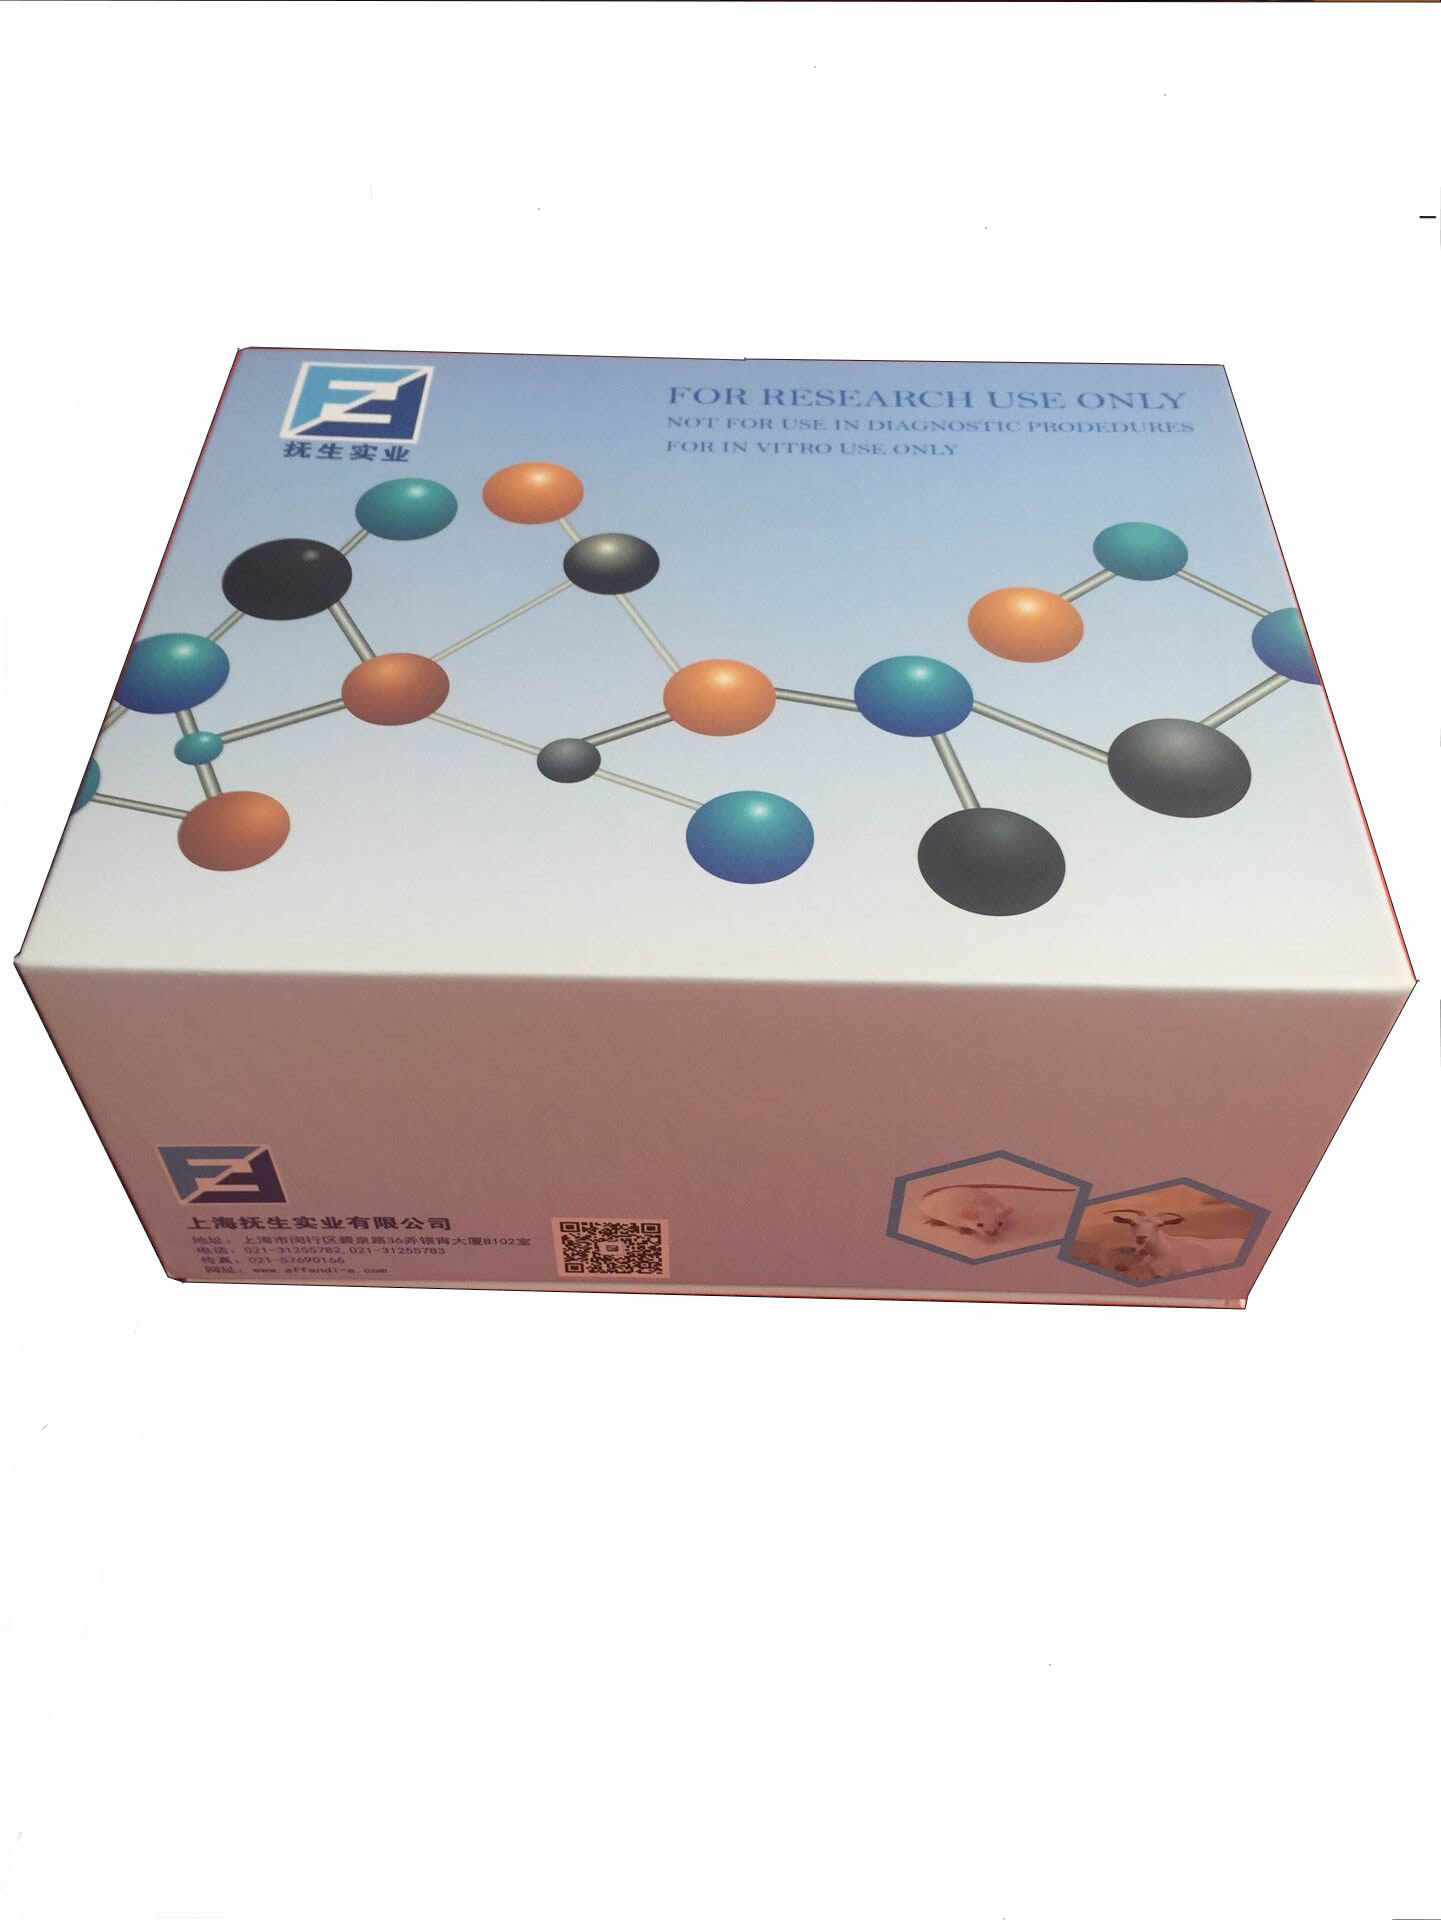 Human ENA-78/CXCL5(Epithelial Neutrophil Activating Peptide 78) ELISA Kit